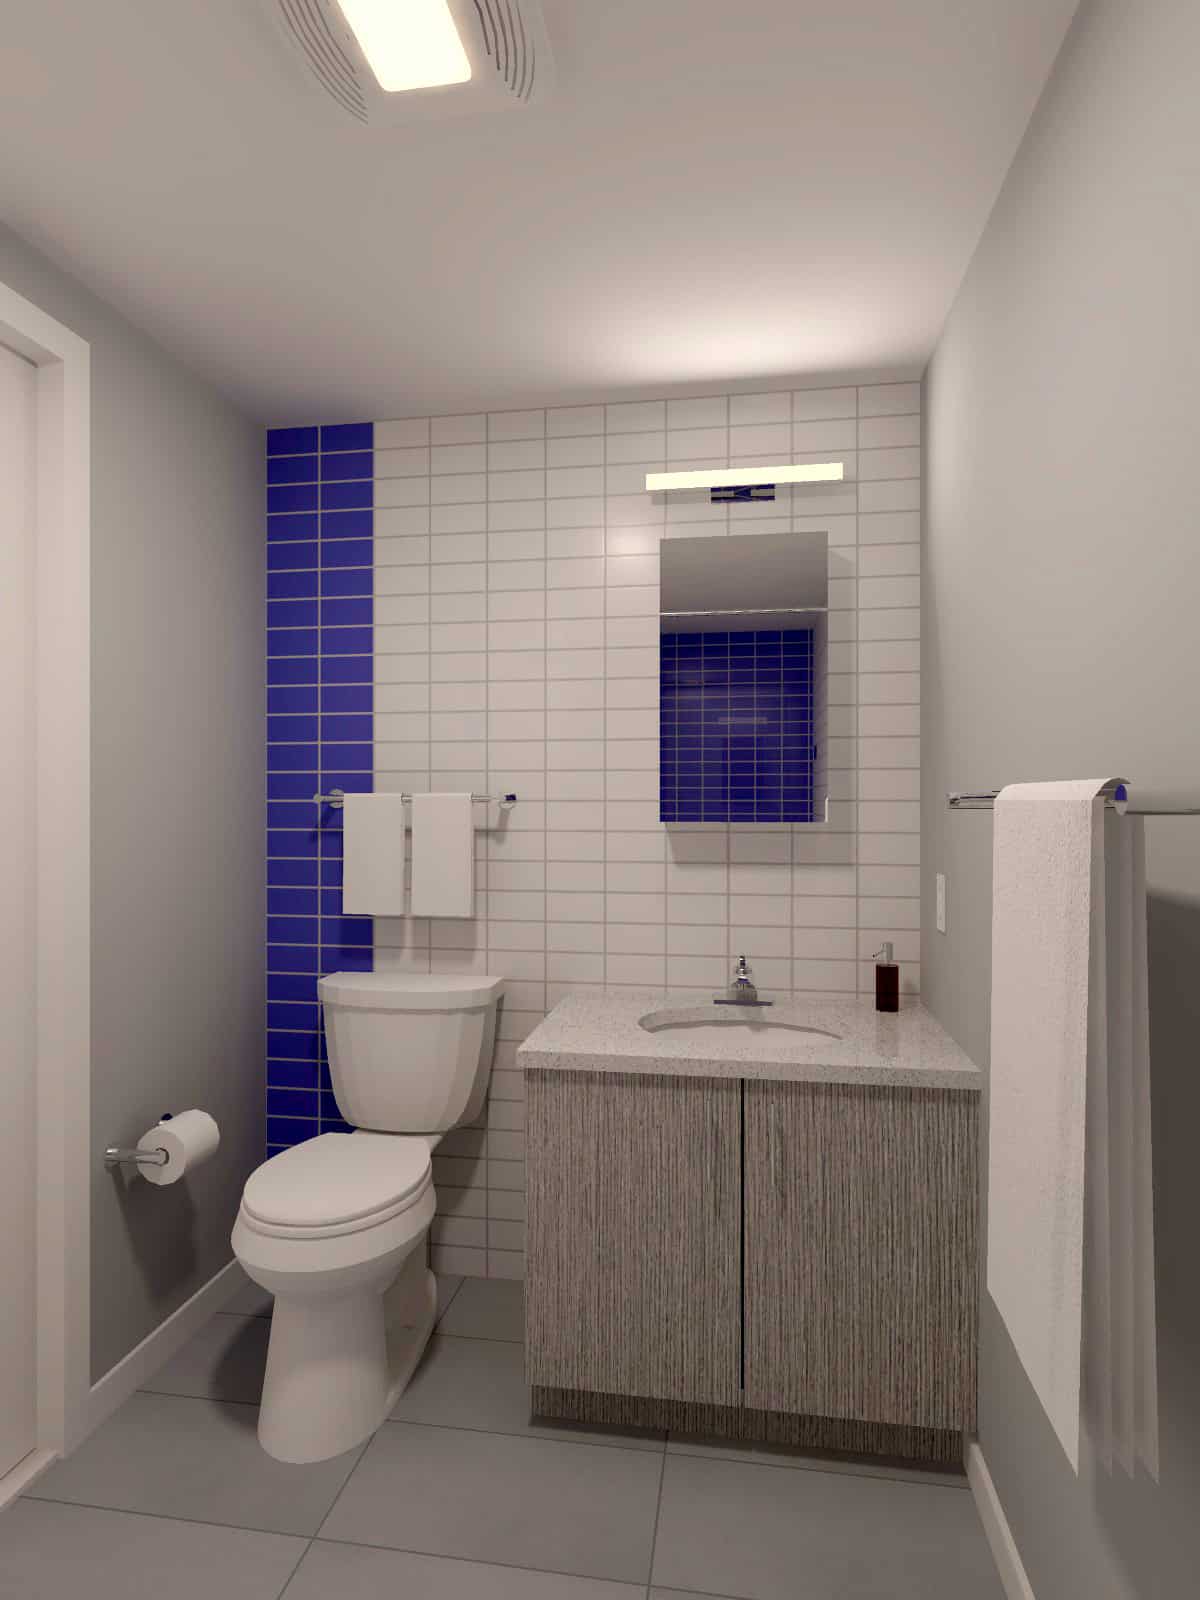 Rendering of a typical bathroom vanity